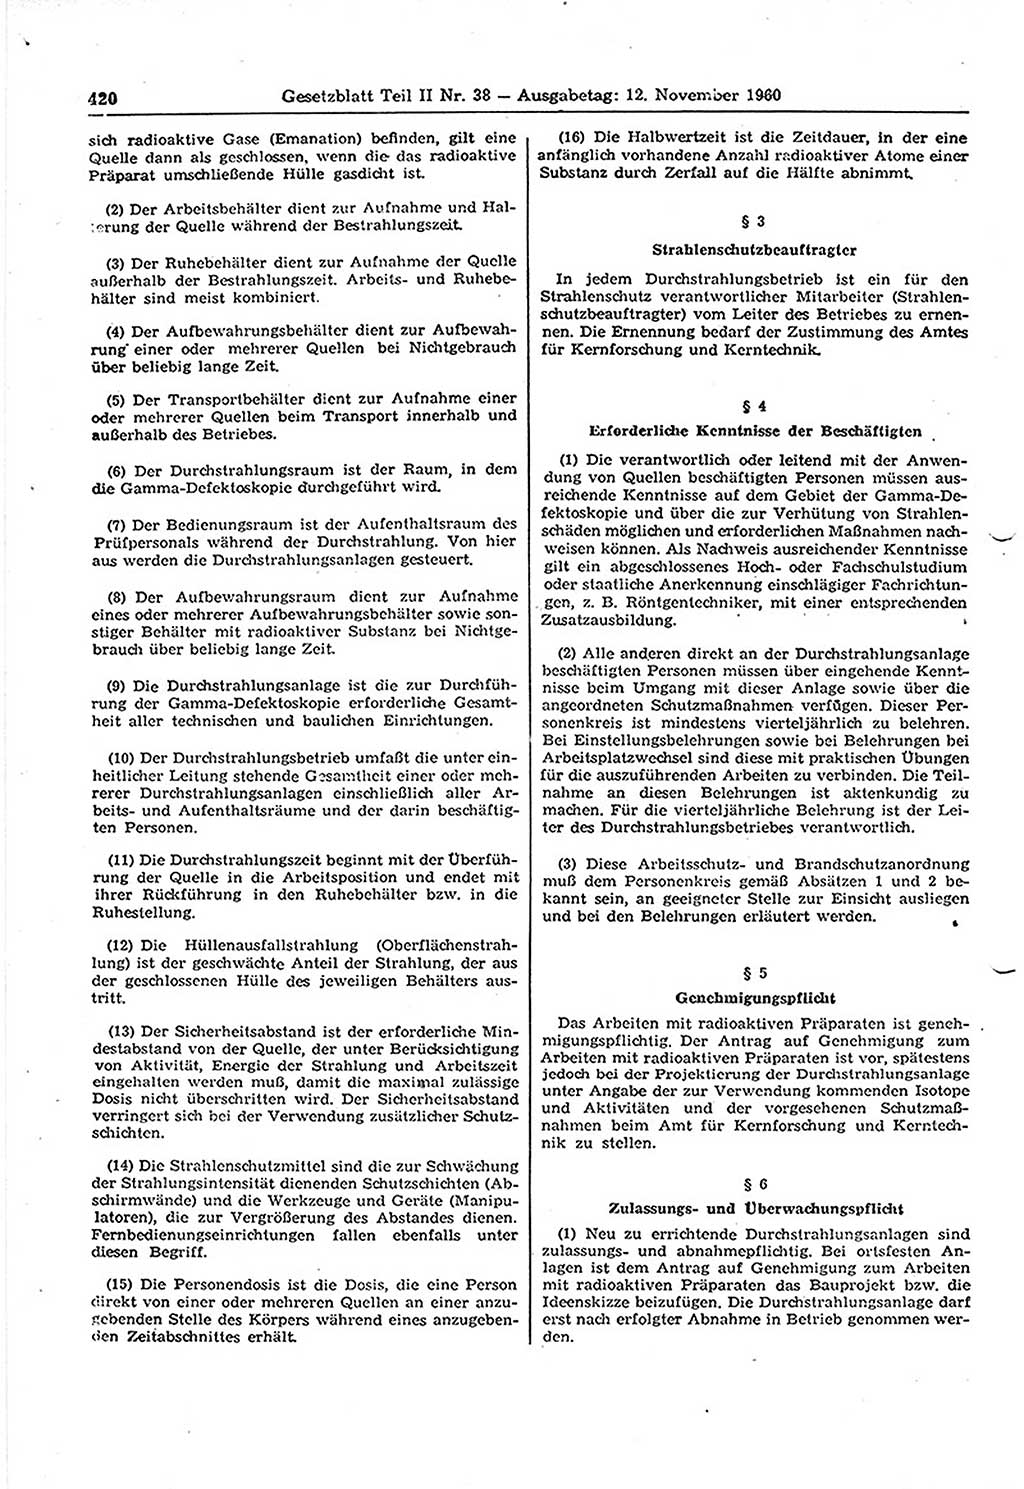 Gesetzblatt (GBl.) der Deutschen Demokratischen Republik (DDR) Teil ⅠⅠ 1960, Seite 420 (GBl. DDR ⅠⅠ 1960, S. 420)